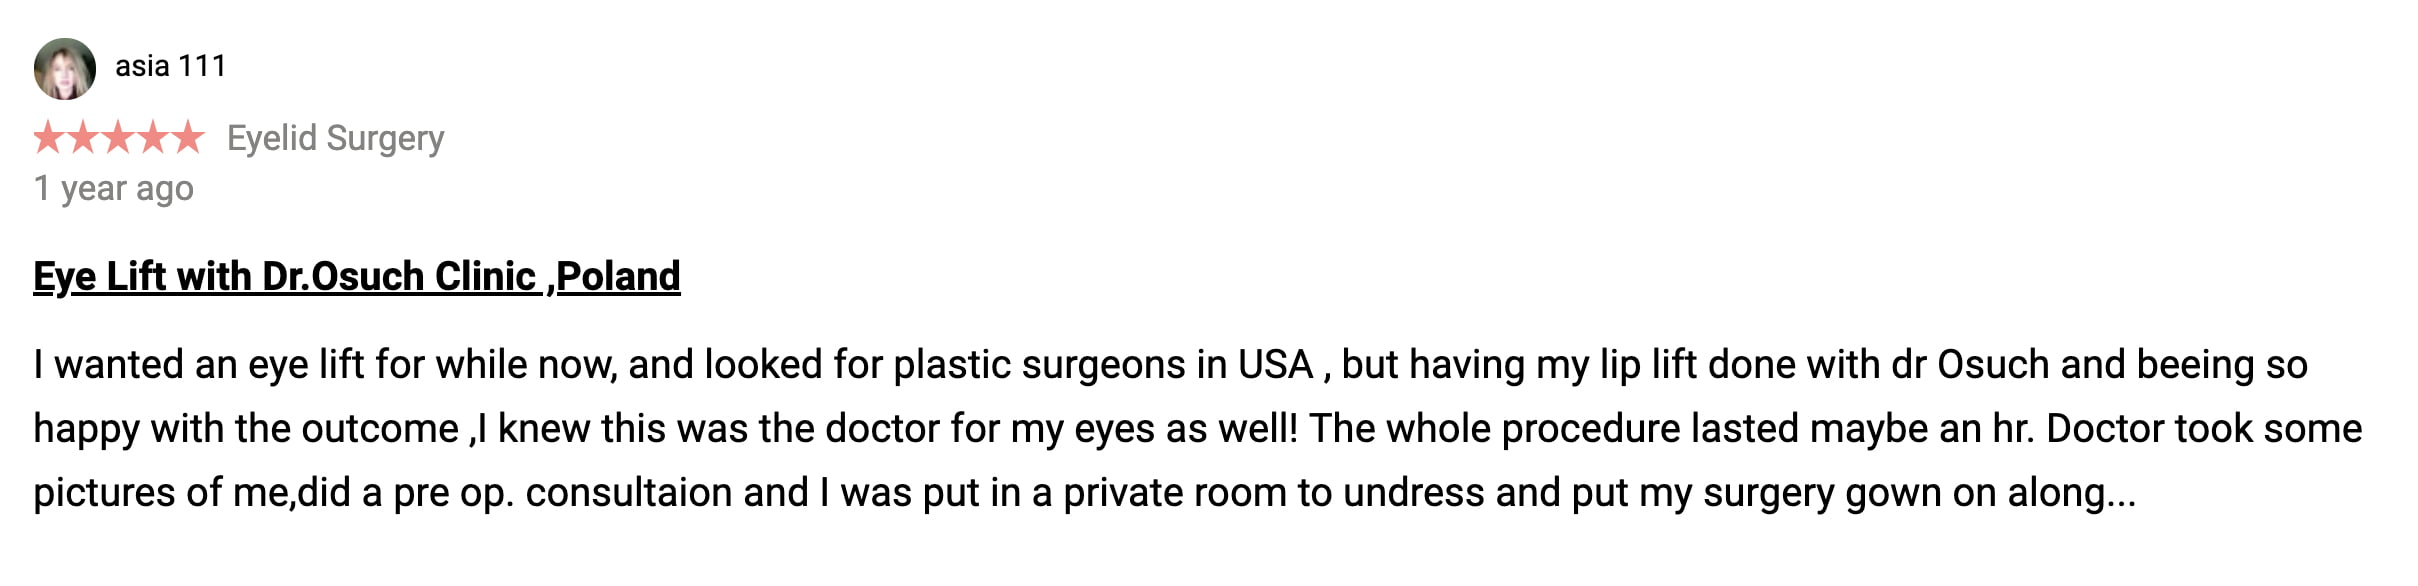 Klinika doktor Osuch chirurgia plastyczna opinie